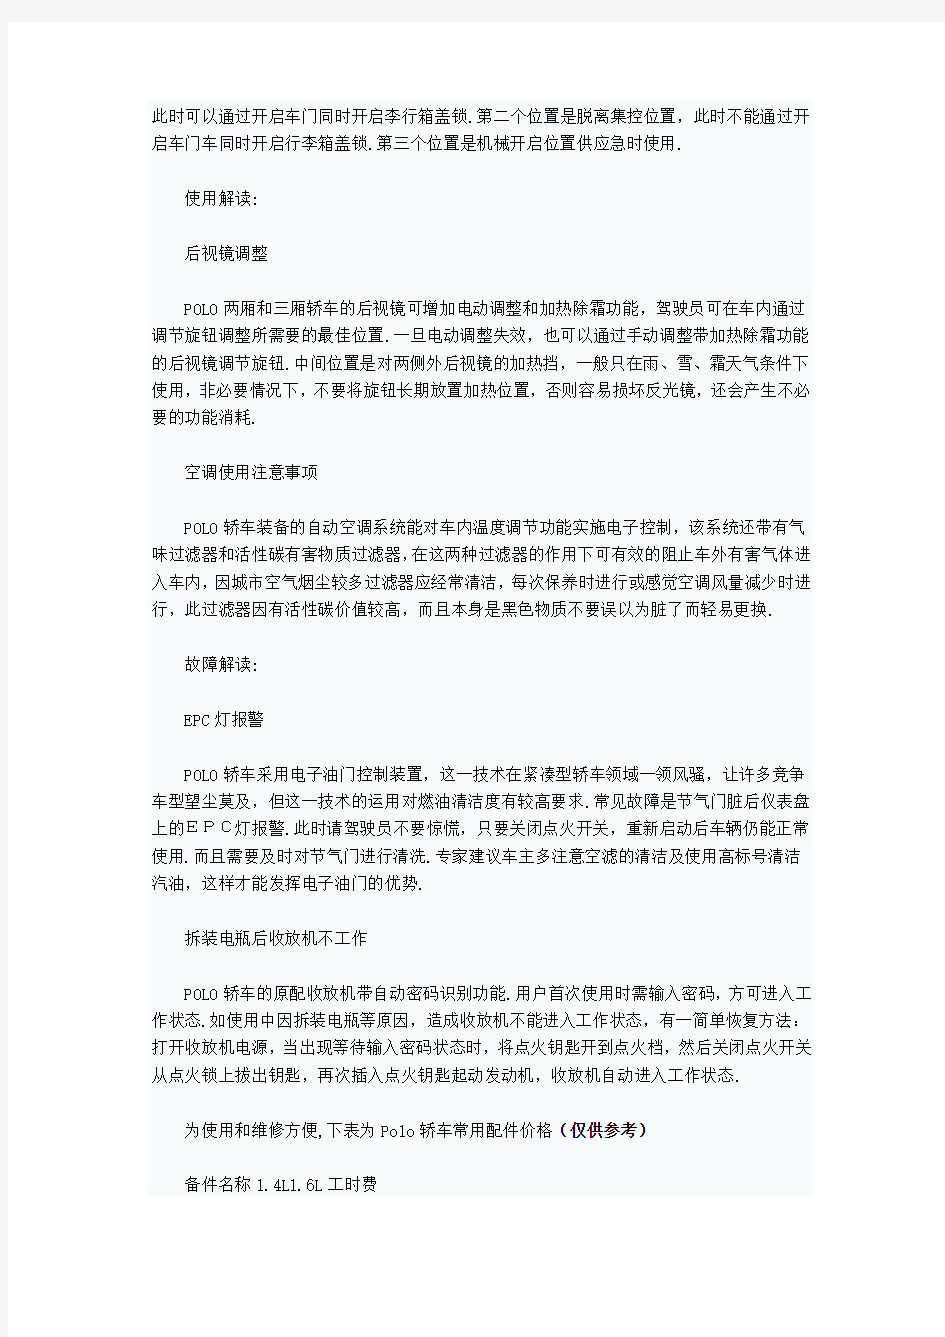 上海大众polo维修实用保养手册